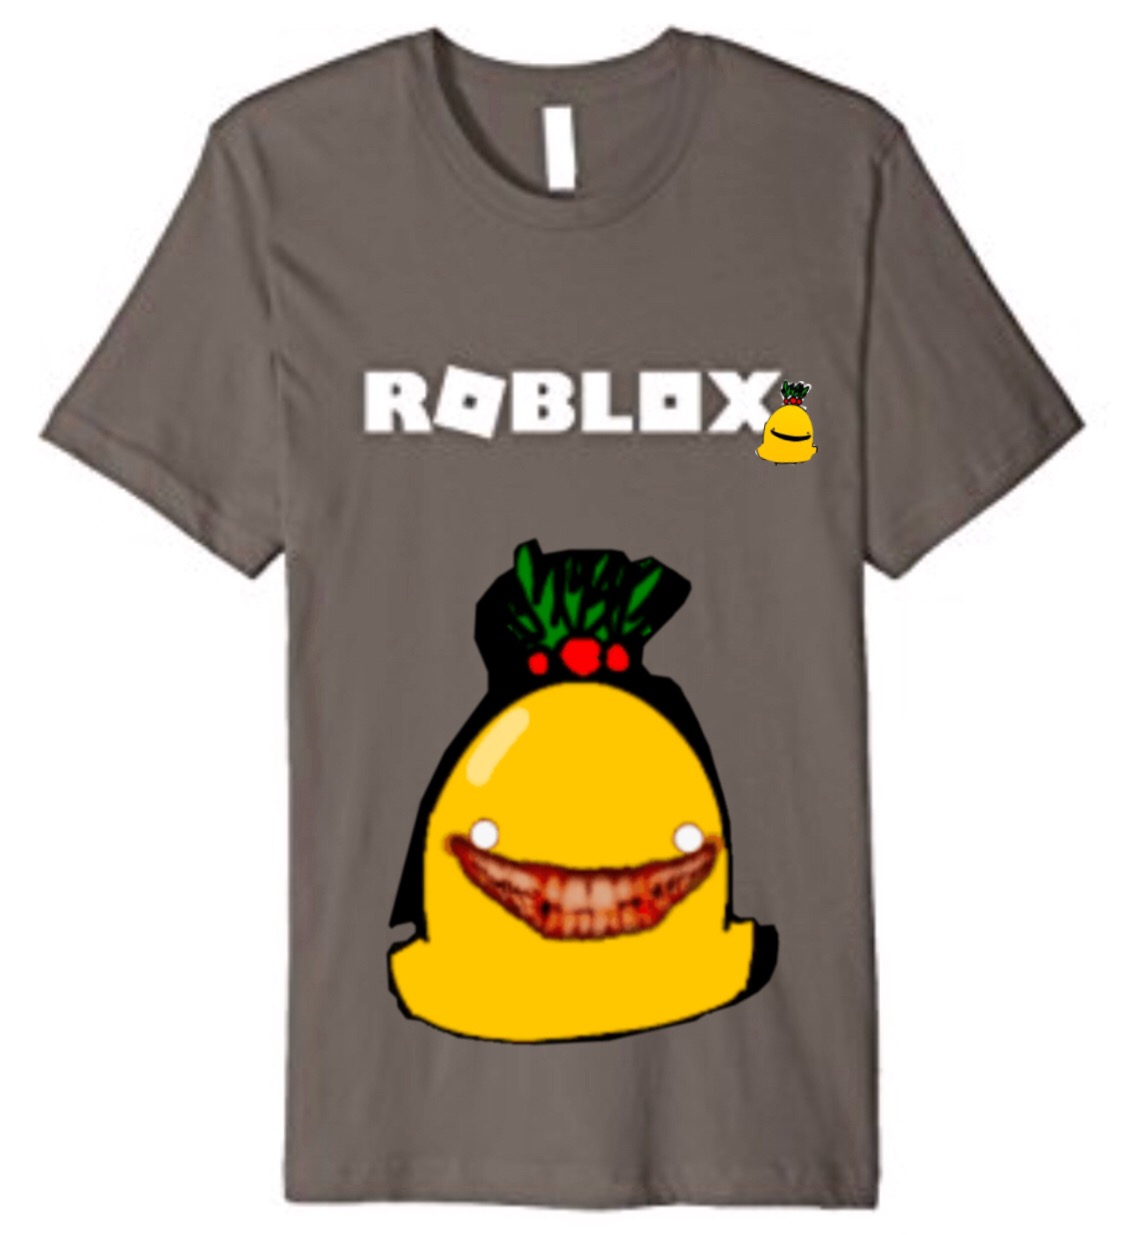 Roblox Dwarf Bell Shirt Image By Green Bell - hamburger roblox shirt